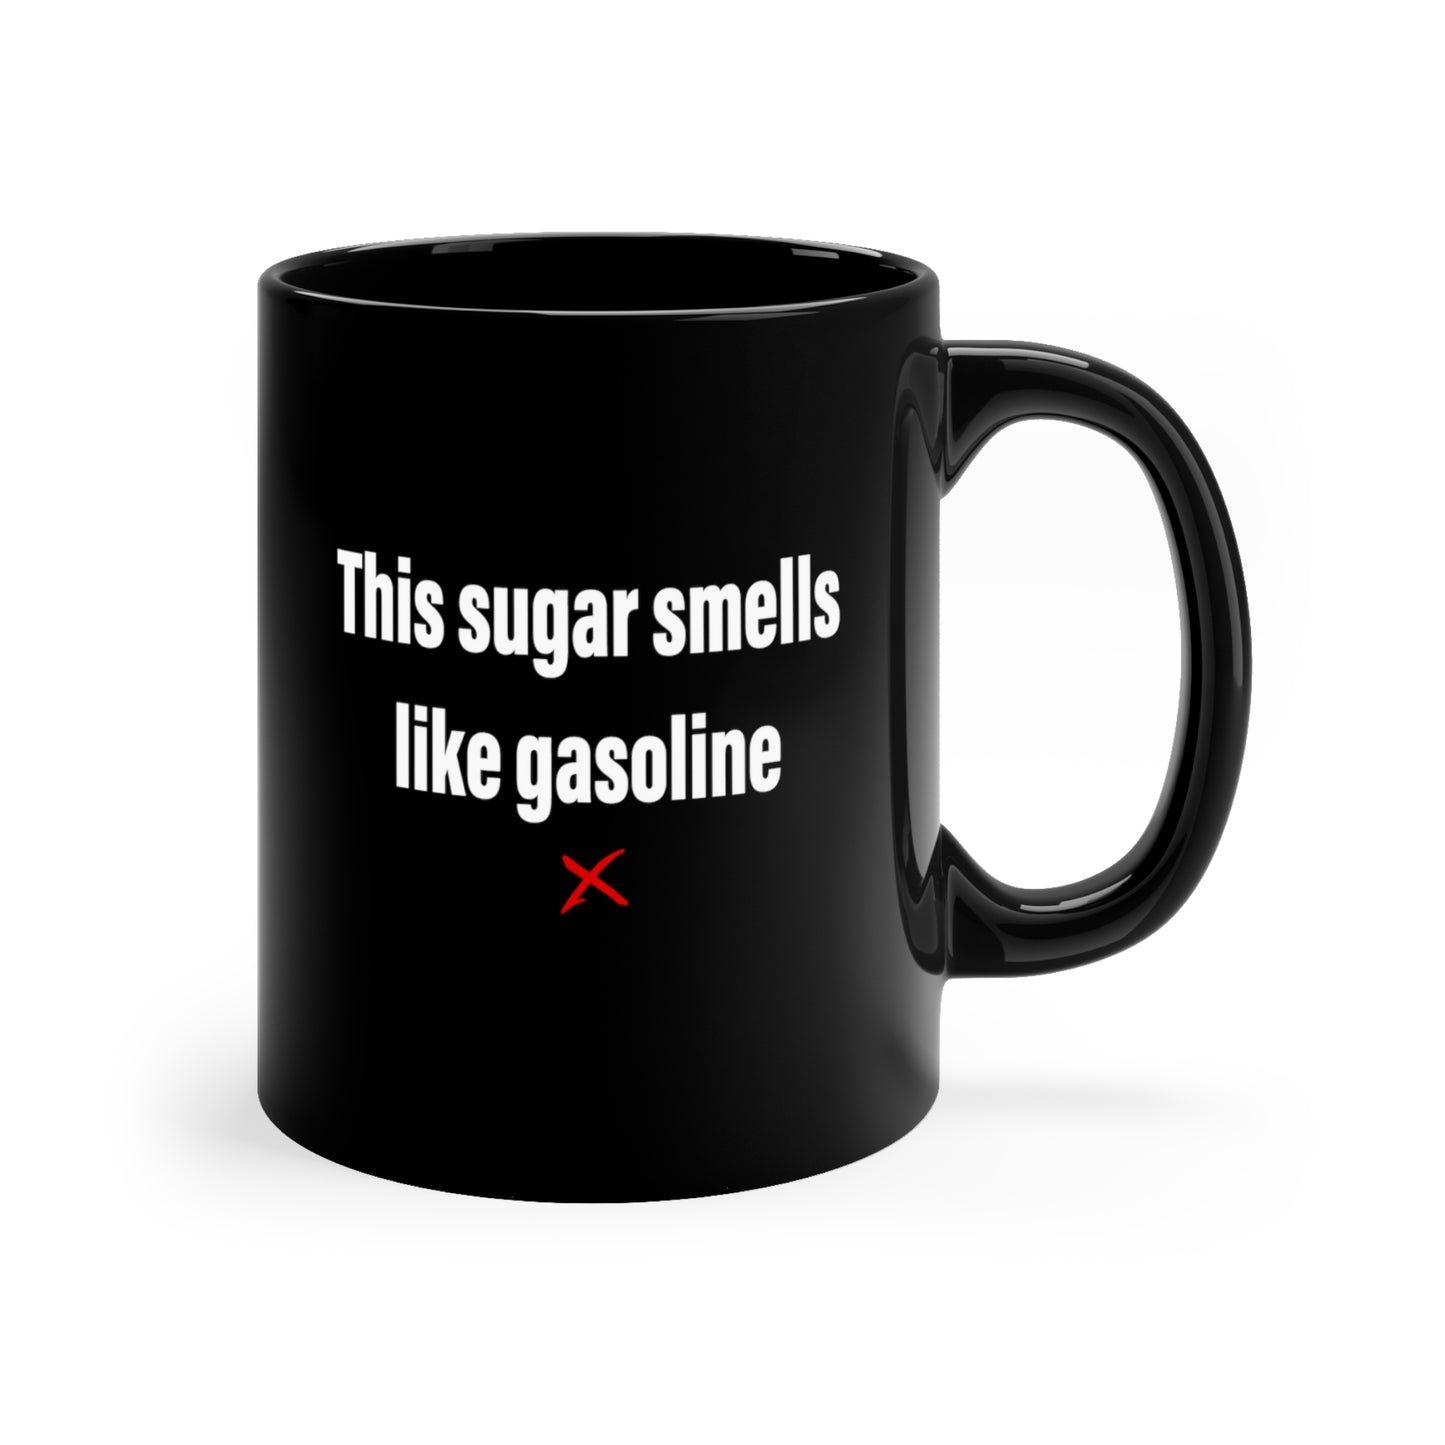 This sugar smells like gasoline - Mug